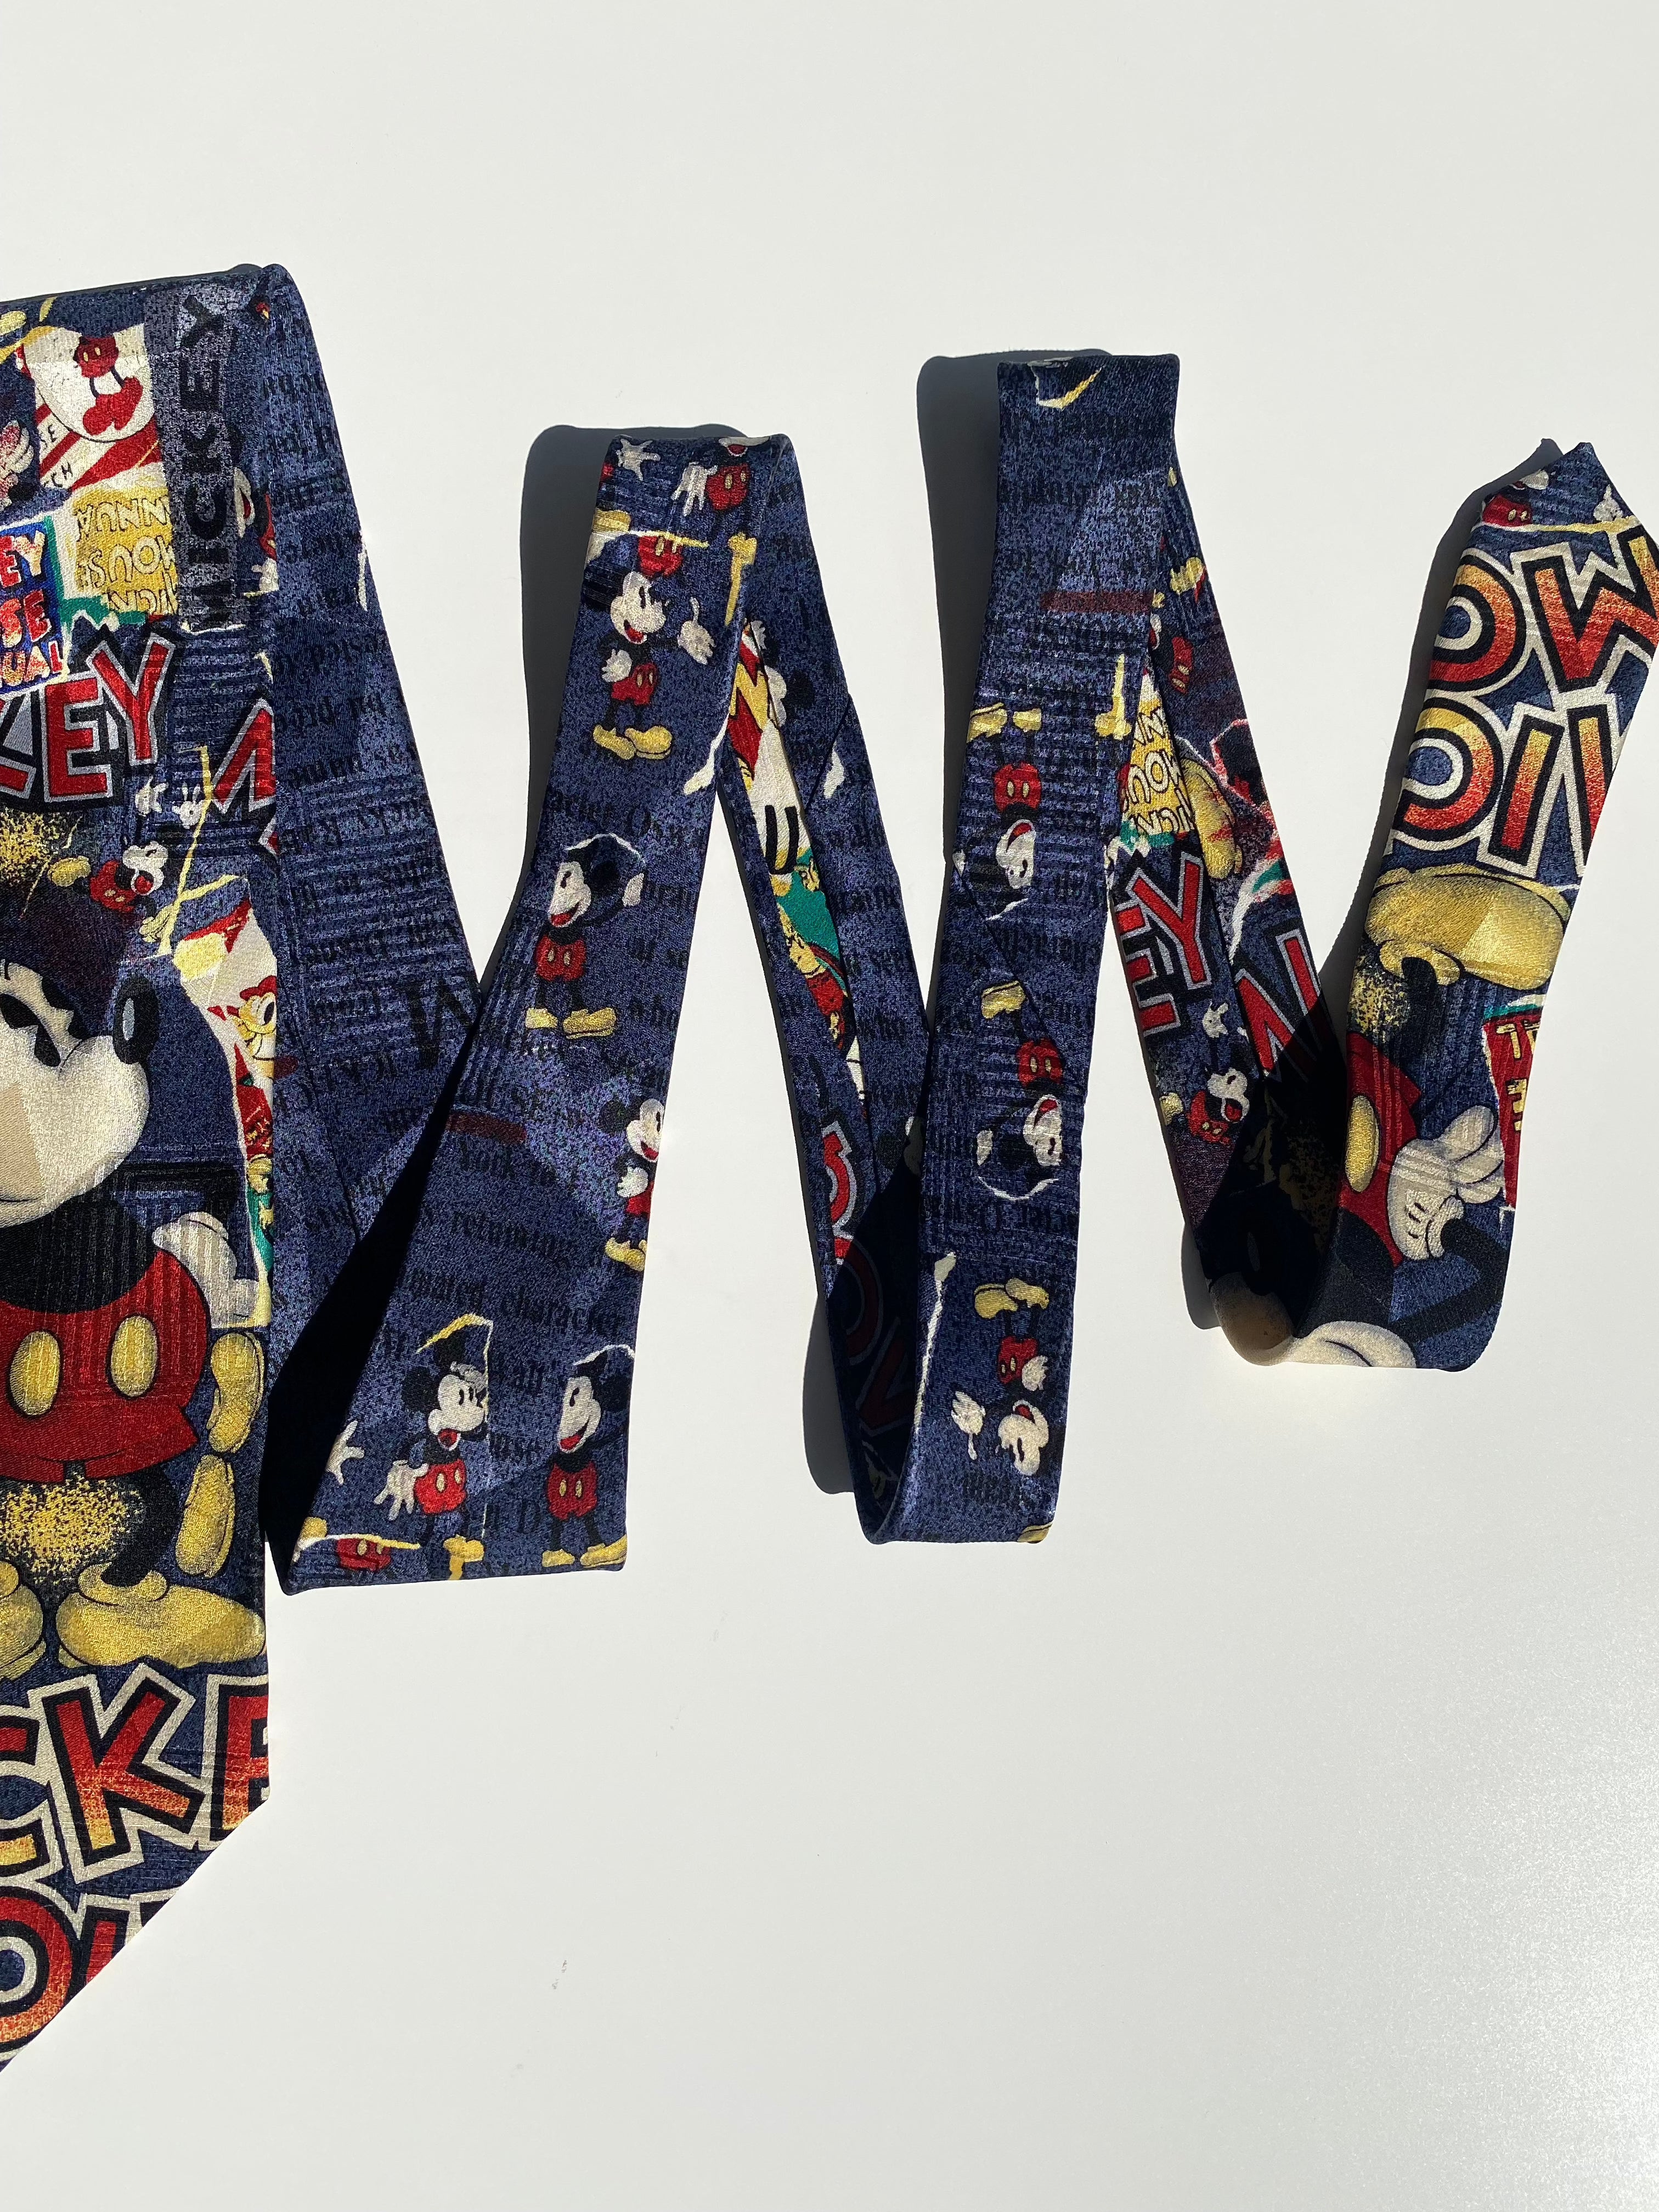 Vintage Disney Silk Micky Mouse Tie - Balagan Vintage Ties crazy print, graphic, graphic ties, printed ties, vintage, vintage ties